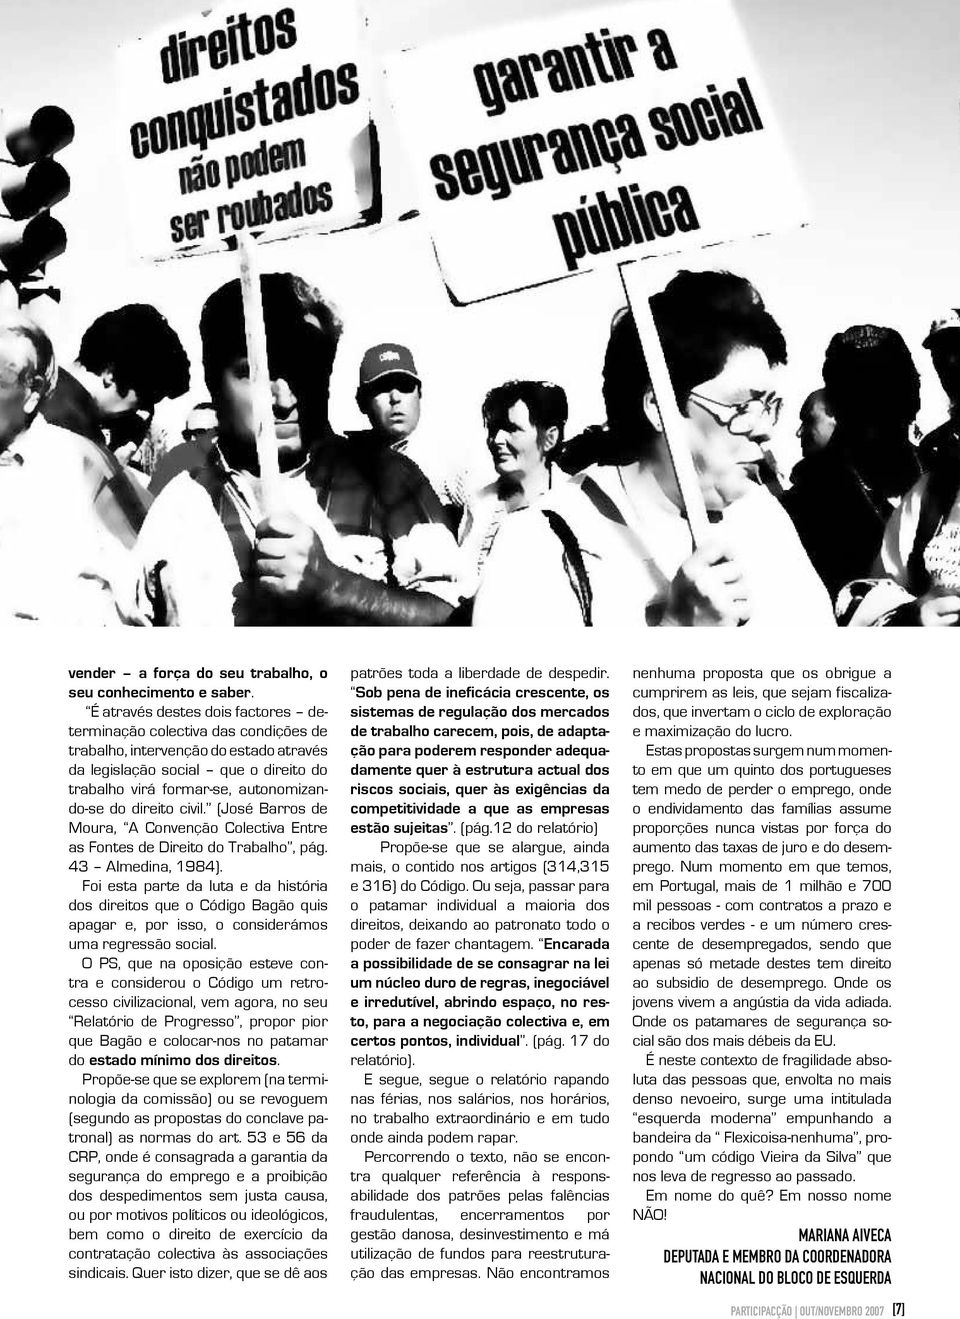 direito civil. (José Barros de Moura, A Convenção Colectiva Entre as Fontes de Direito do Trabalho, pág. 43 Almedina, 1984).